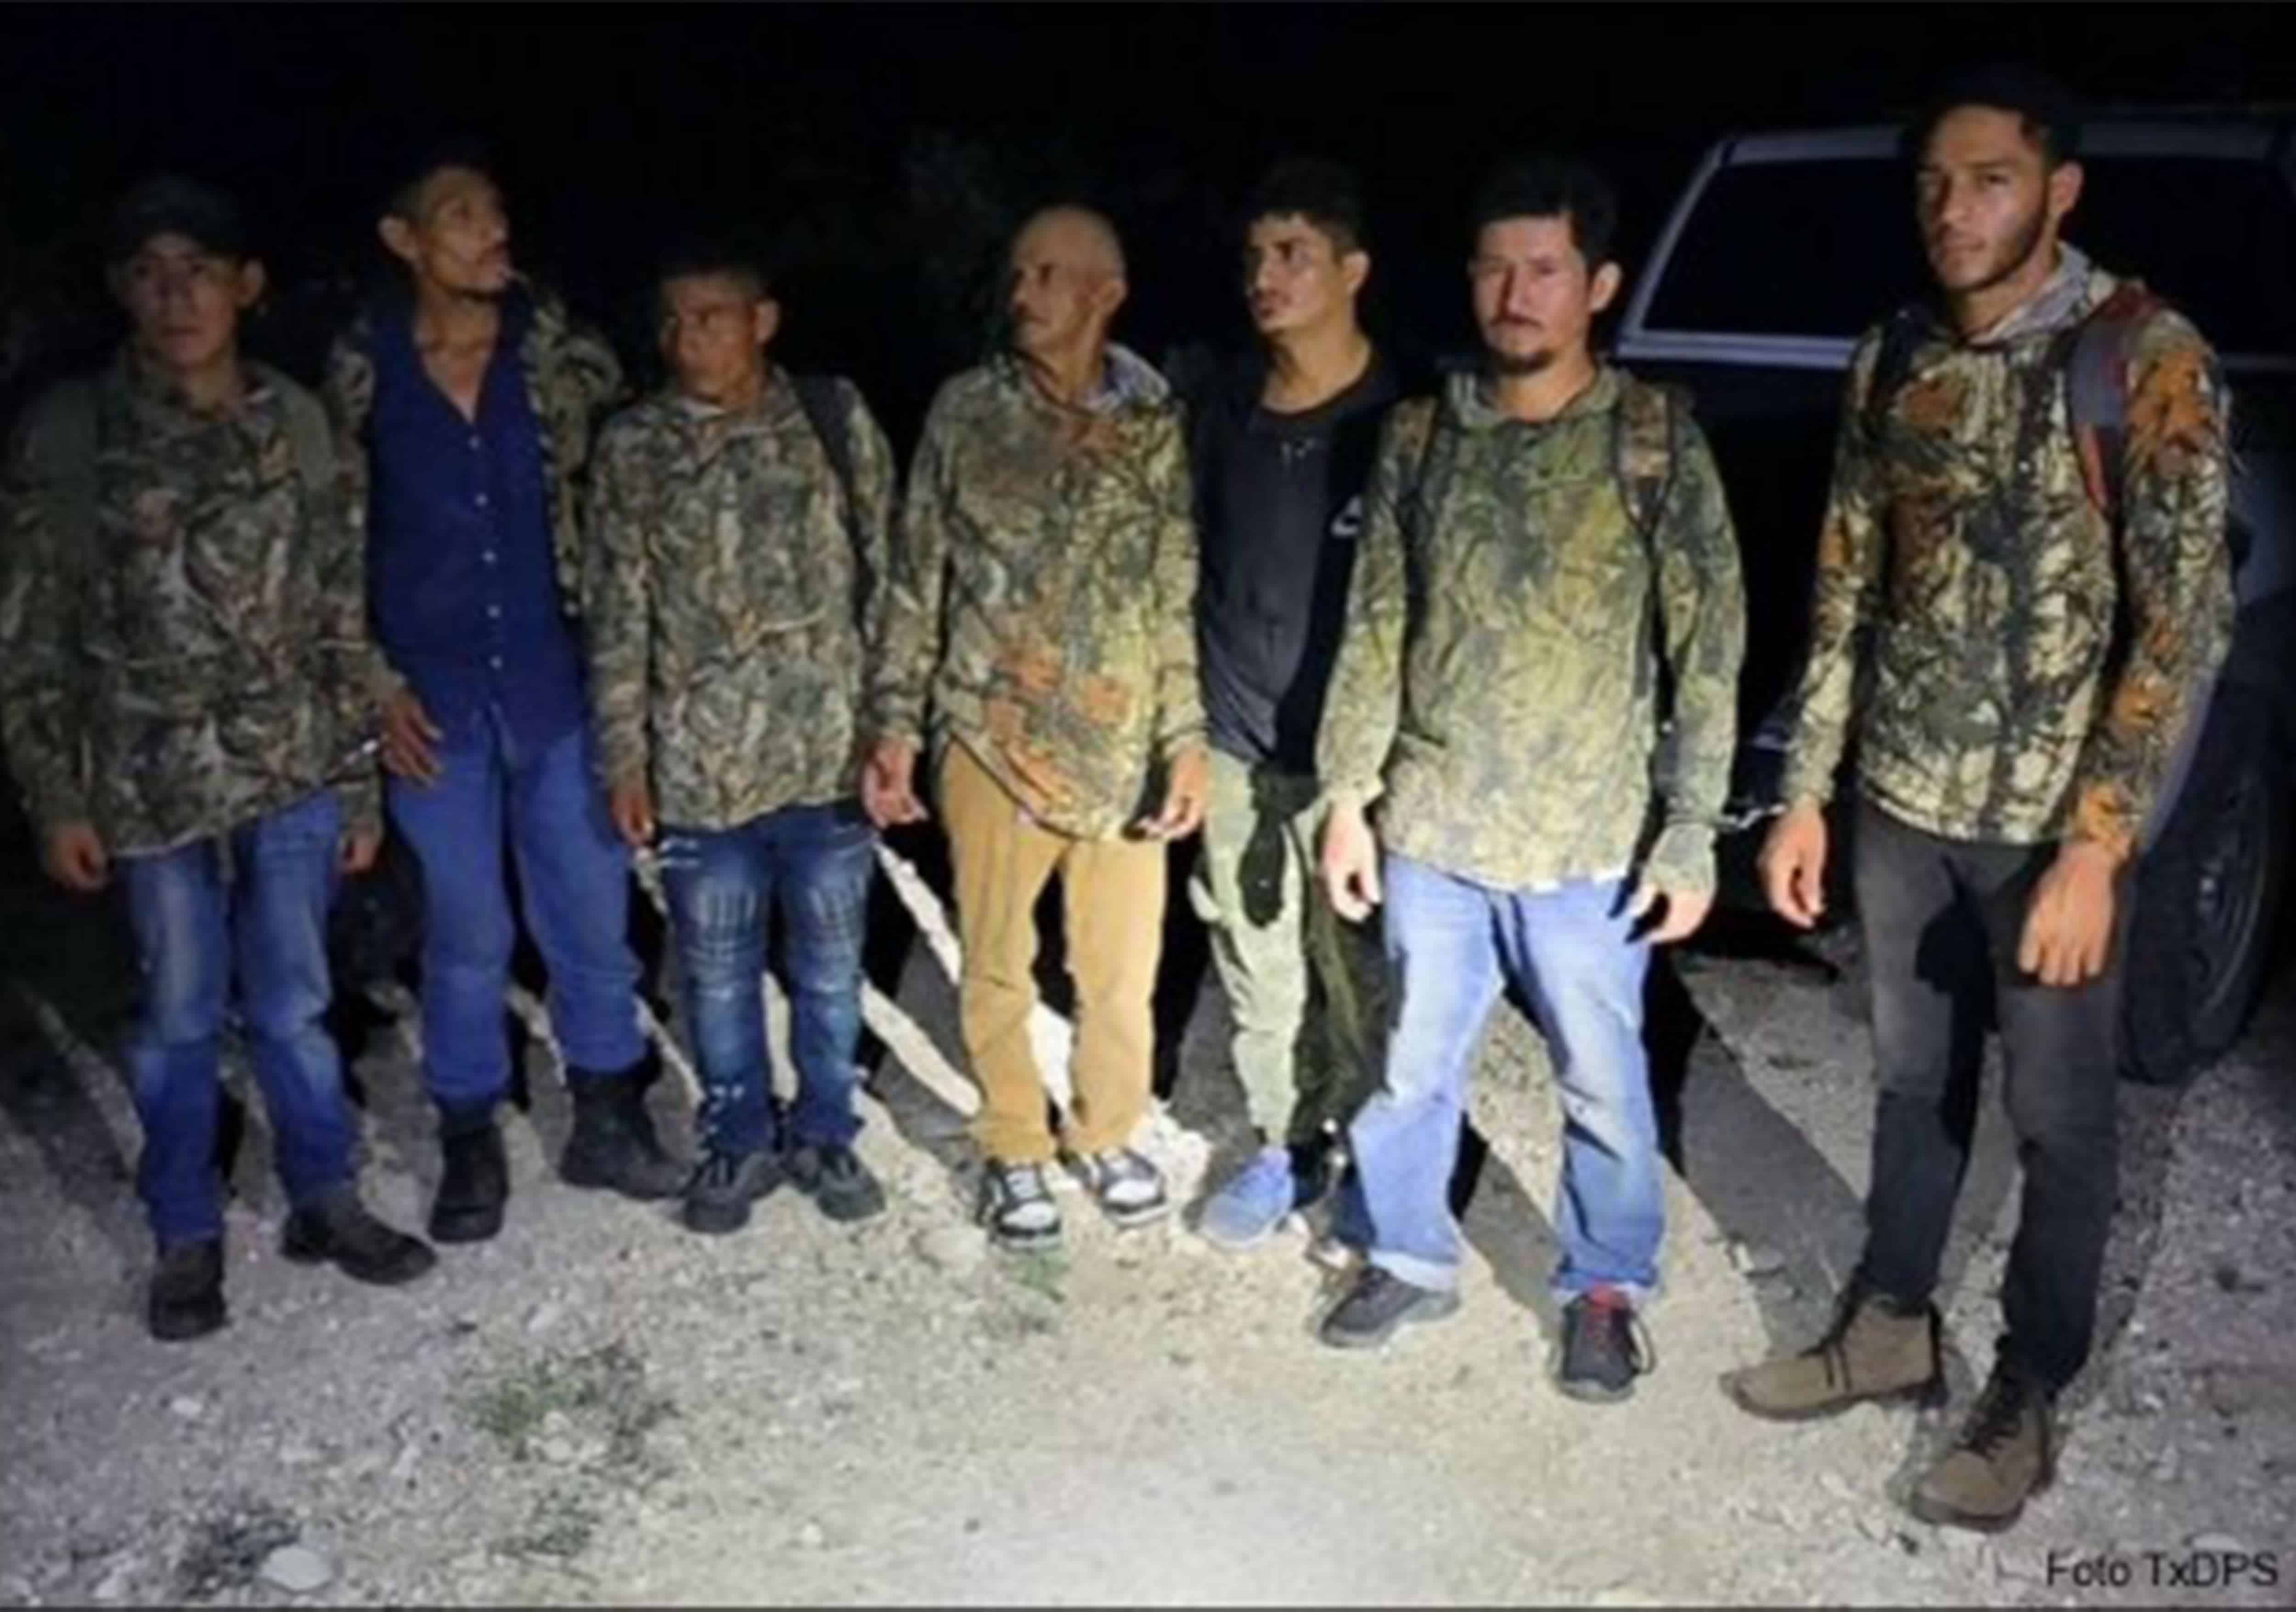 Capturan a 7 migrantes vestidos de camuflaje en rancho de Texas